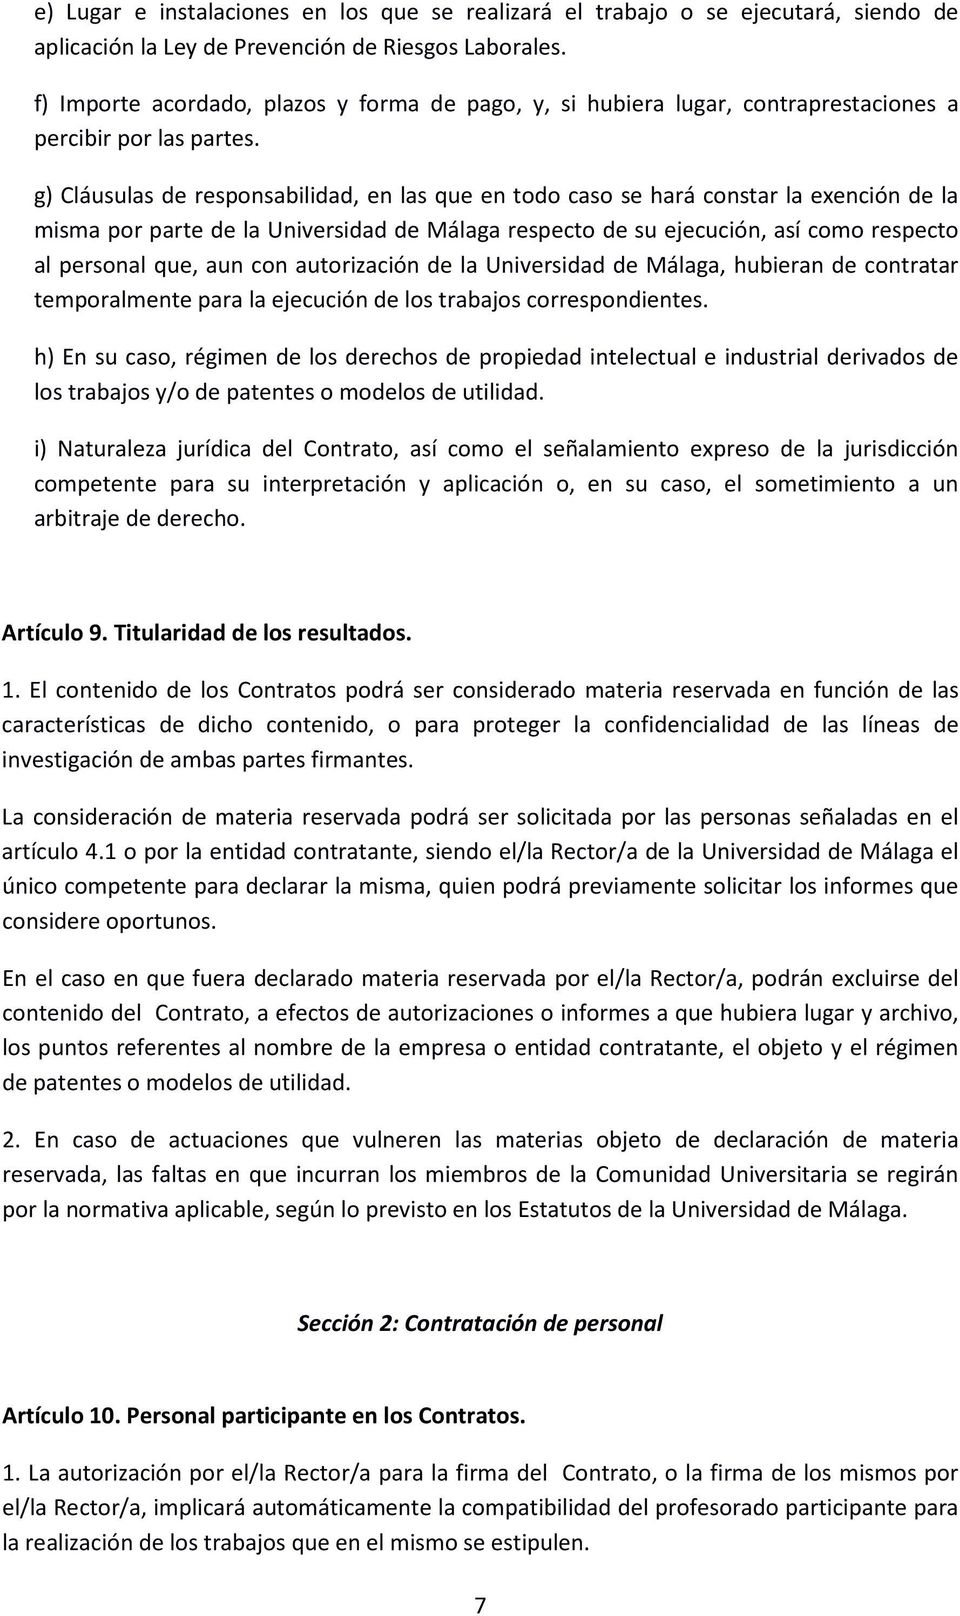 g) Cláusulas de responsabilidad, en las que en todo caso se hará constar la exención de la misma por parte de la Universidad de Málaga respecto de su ejecución, así como respecto al personal que, aun